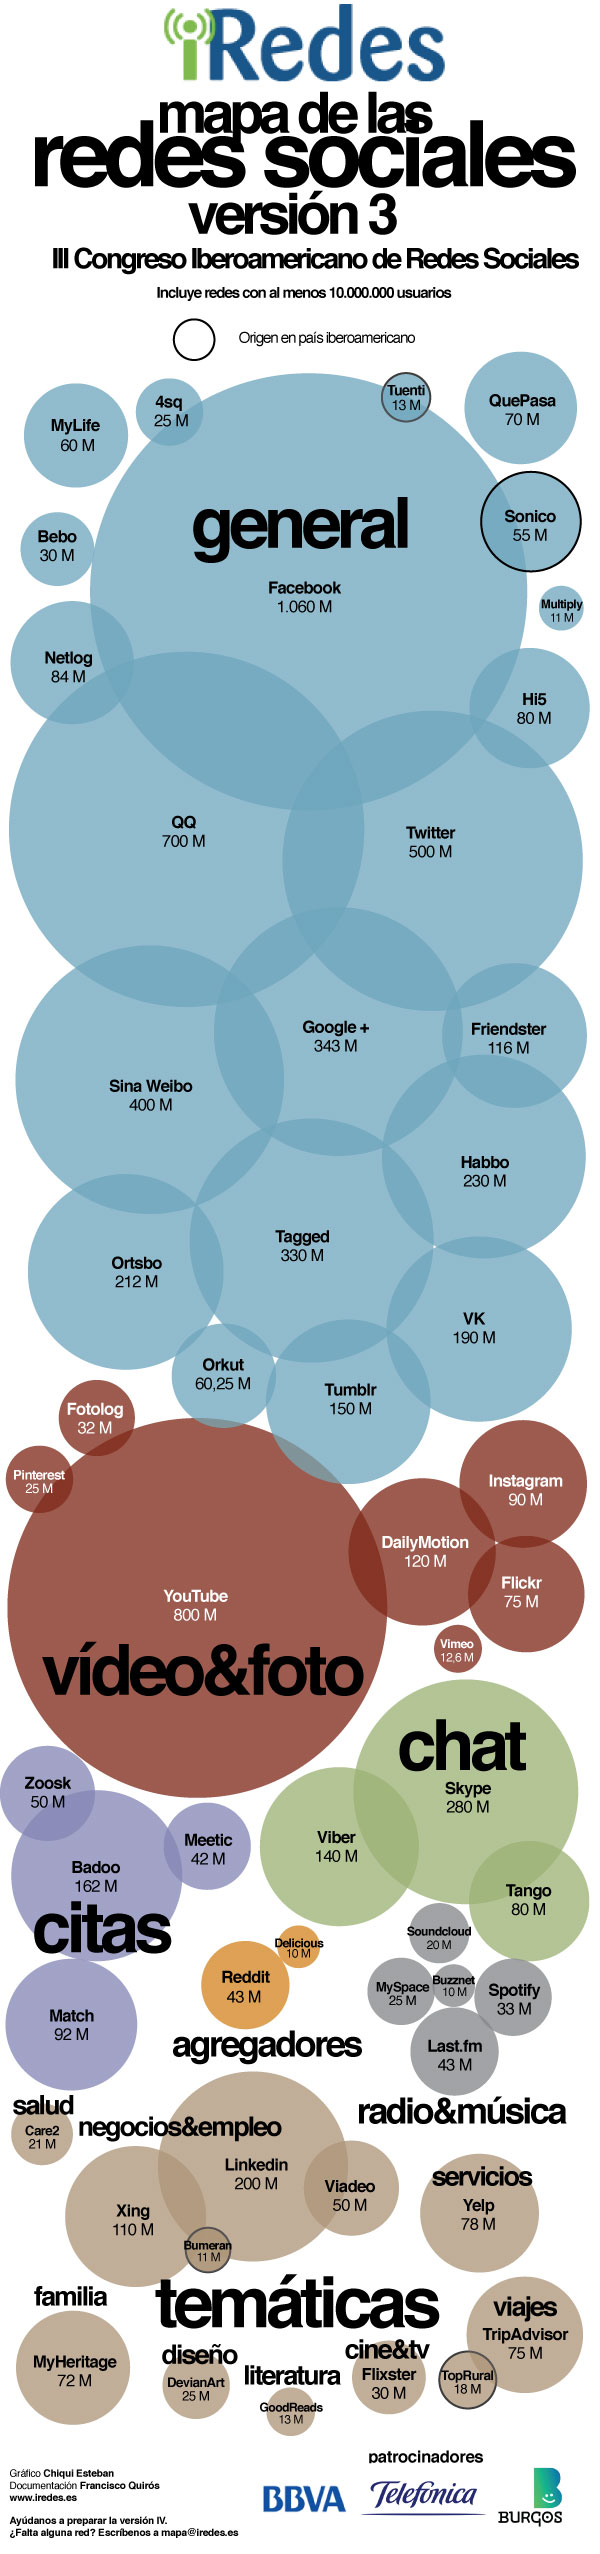 Mapa mundial de las Redes Sociales parte 3 iRedes vertical